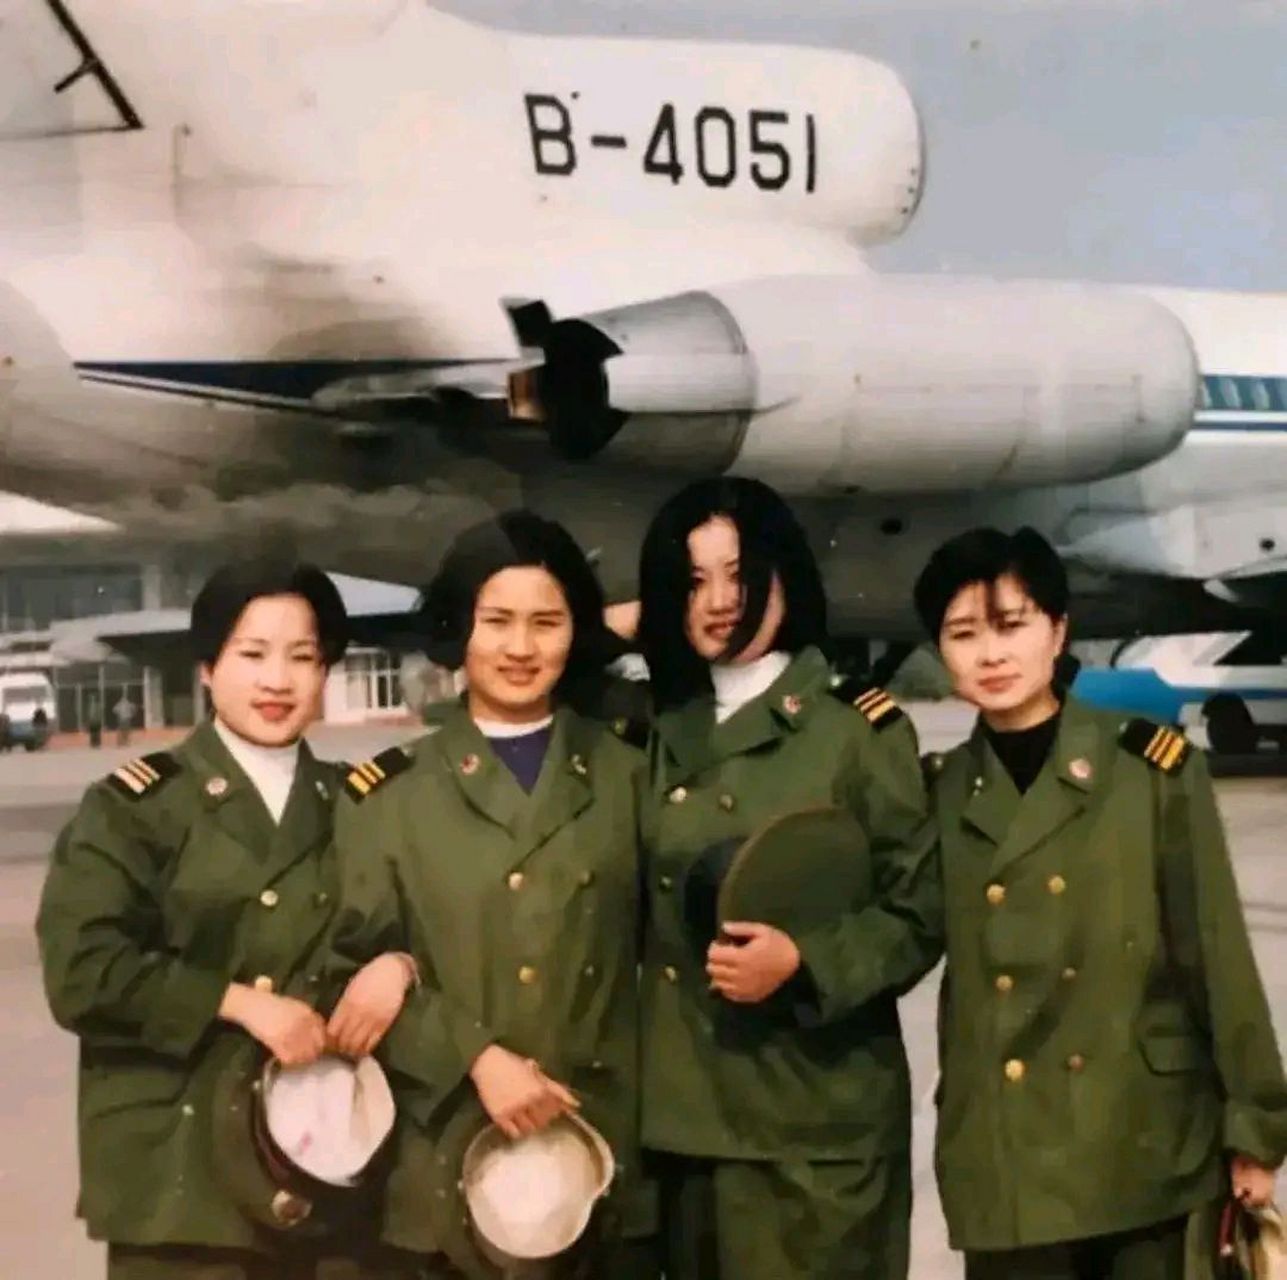 这张照片拍摄于1995年,四川省成都市太平寺机场里,四名女军人的合影.